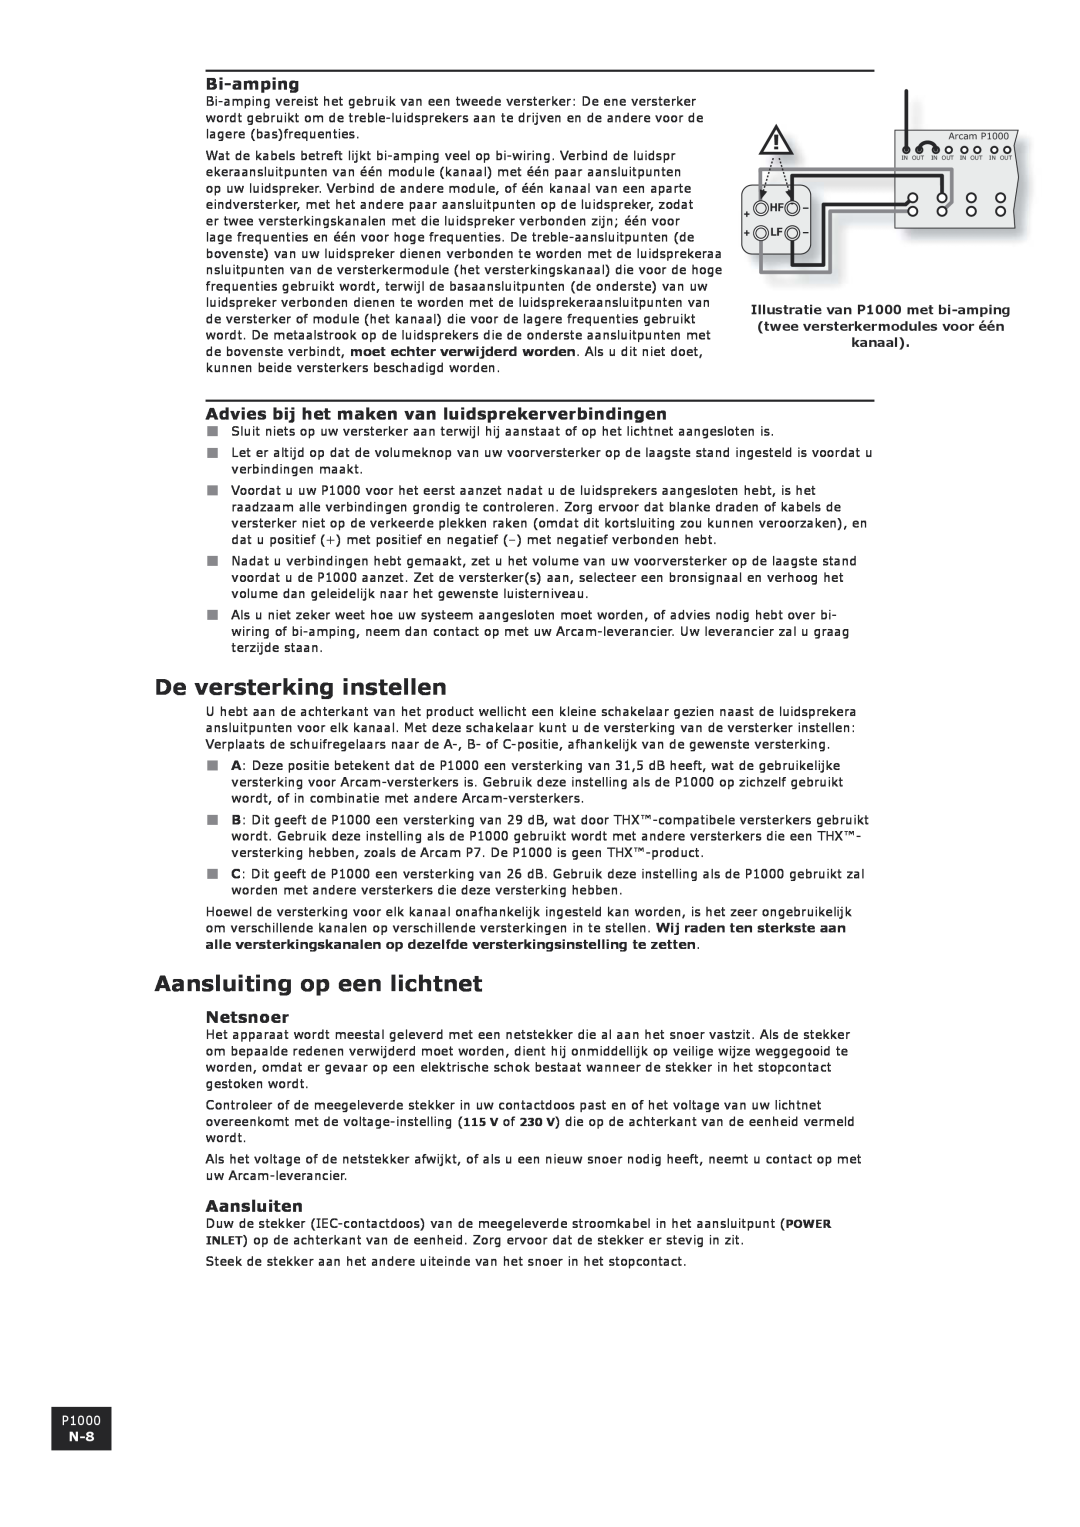 Arcam P1000 manual De versterking instellen, Aansluiting op een lichtnet, Advies bij het maken van luidsprekerverbindingen 